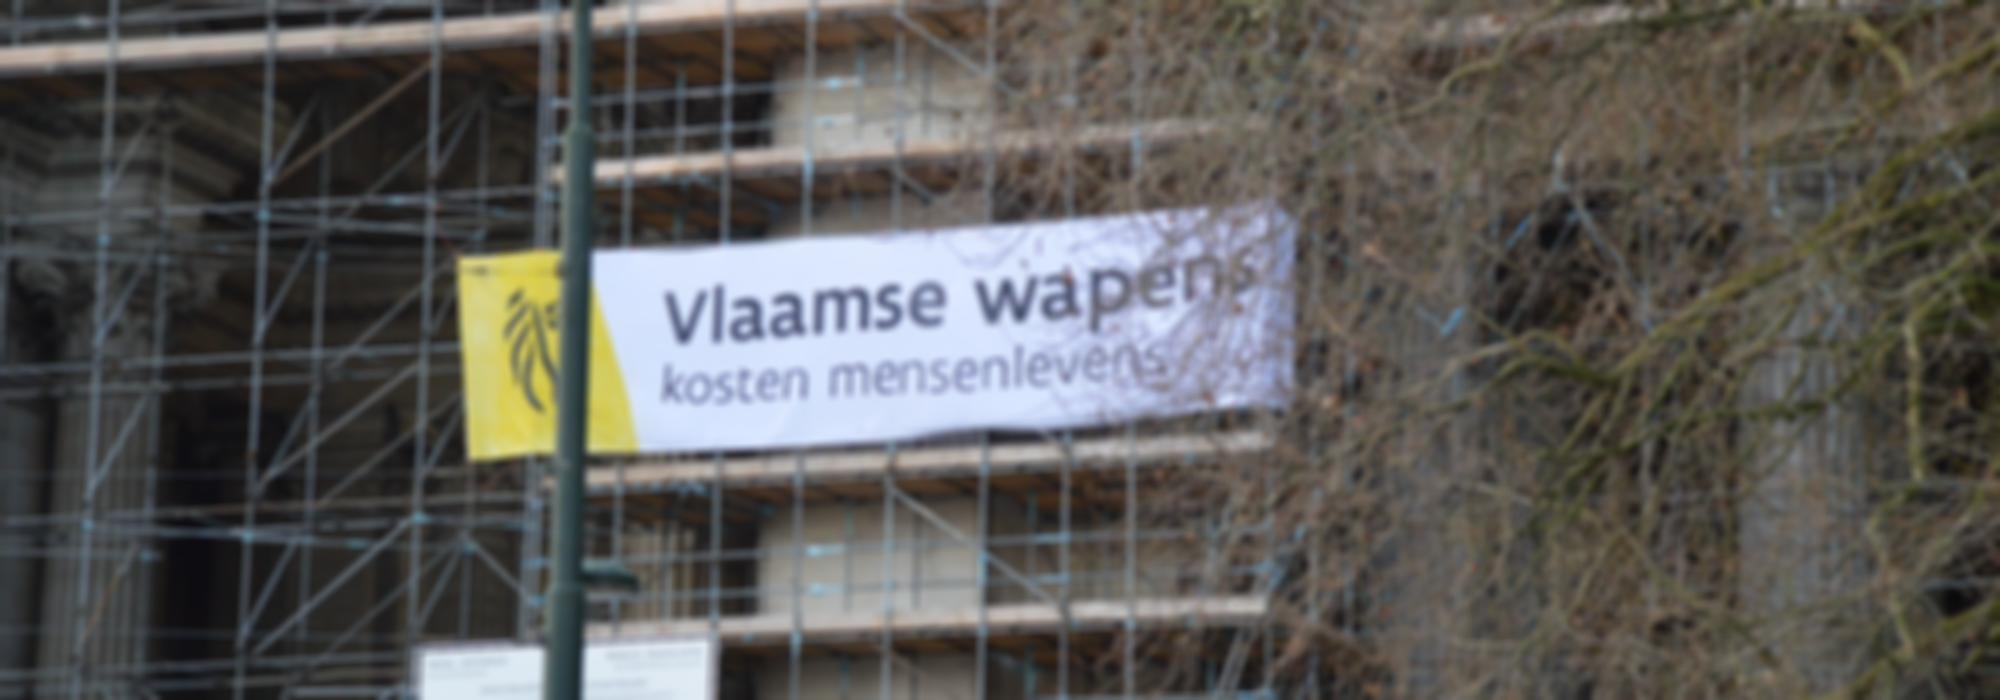 banner met Vlaamse wapens kosten mensenlevens aan het justitiepaleis in Brussel